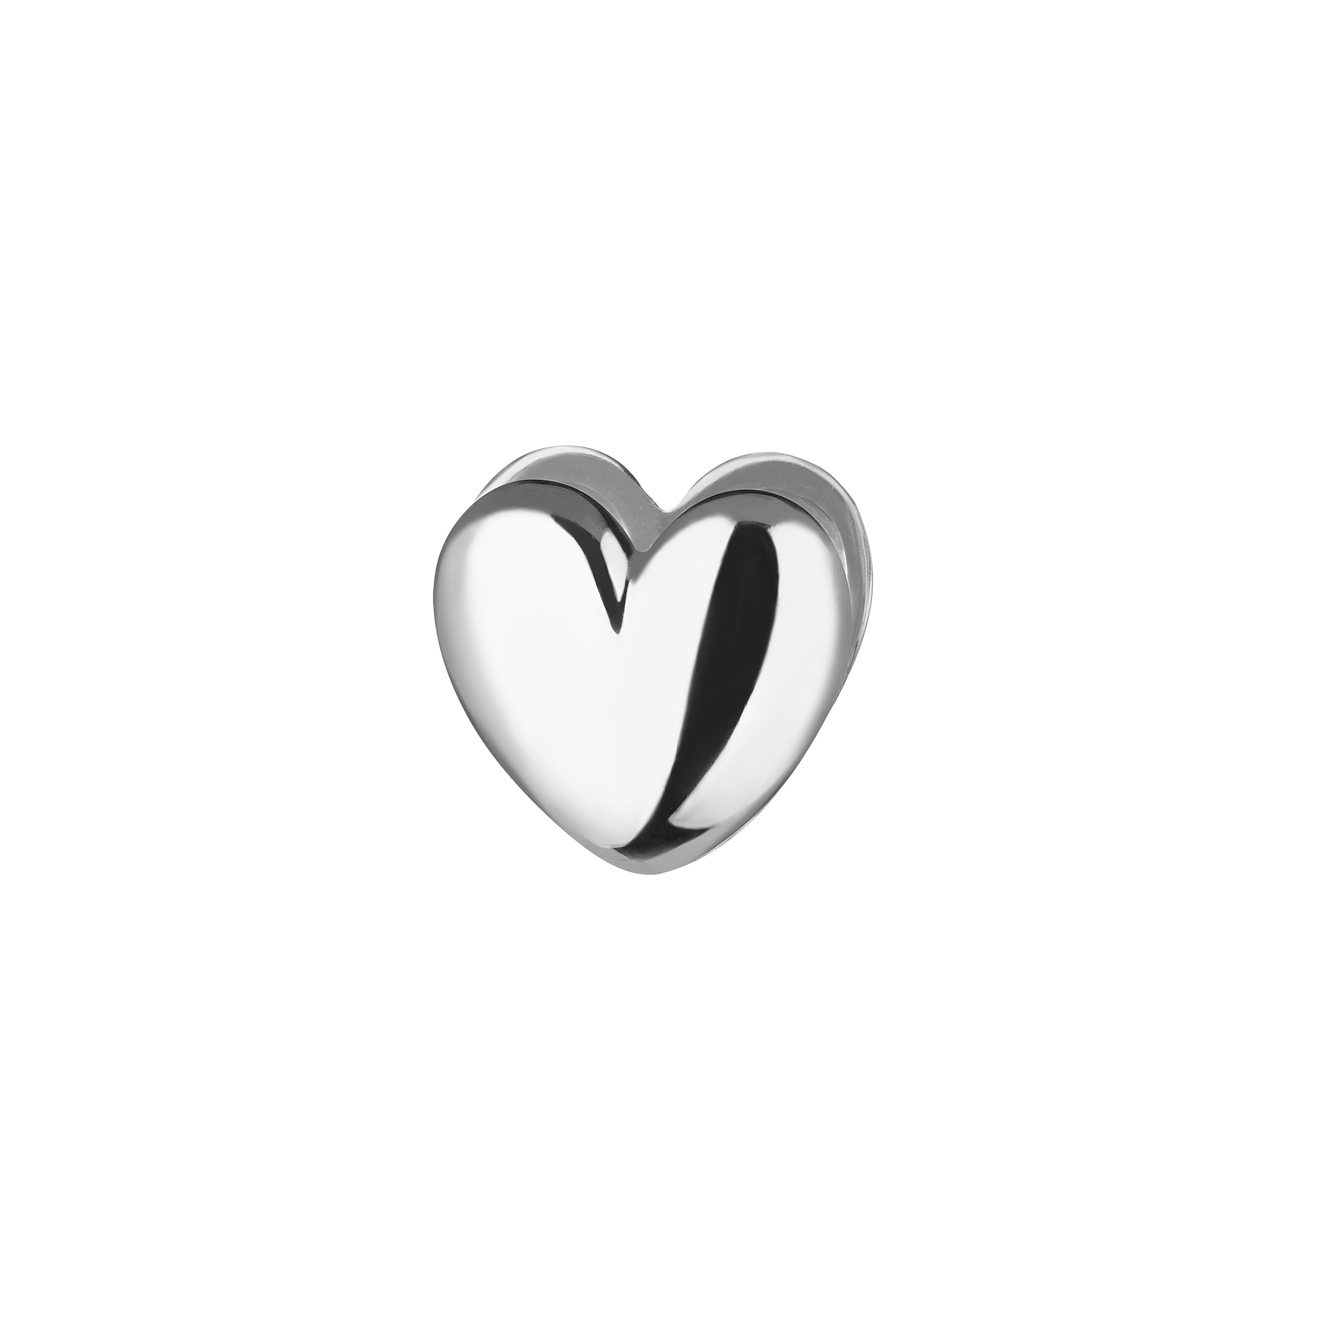 Ms. Marble Моносерьга-сердце Prem из серебра ms marble подвеска волна flow на цепочке из серебра